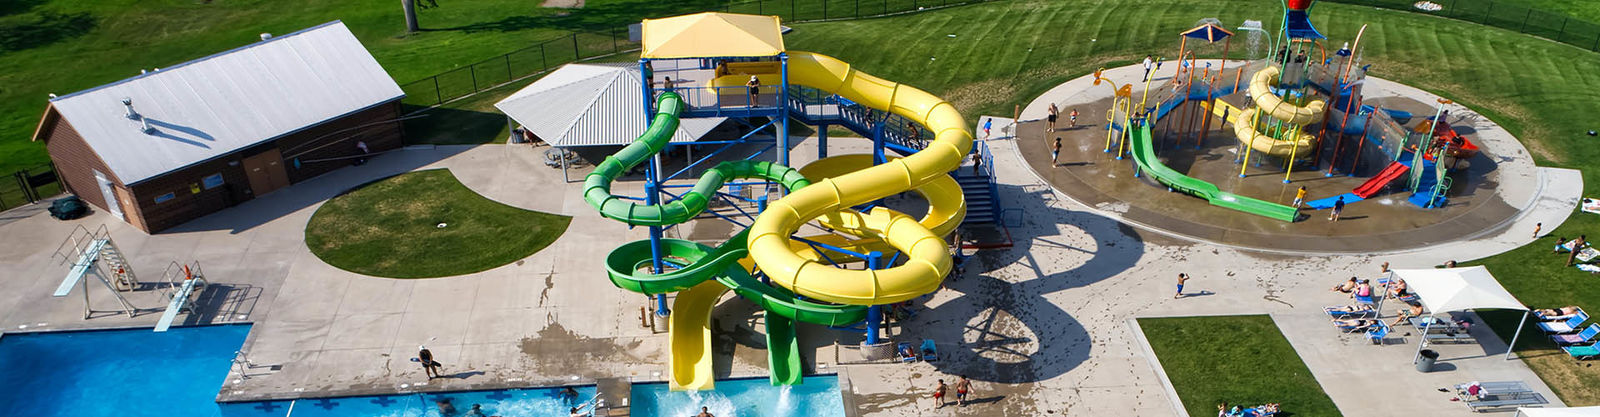 Playground Water Slide